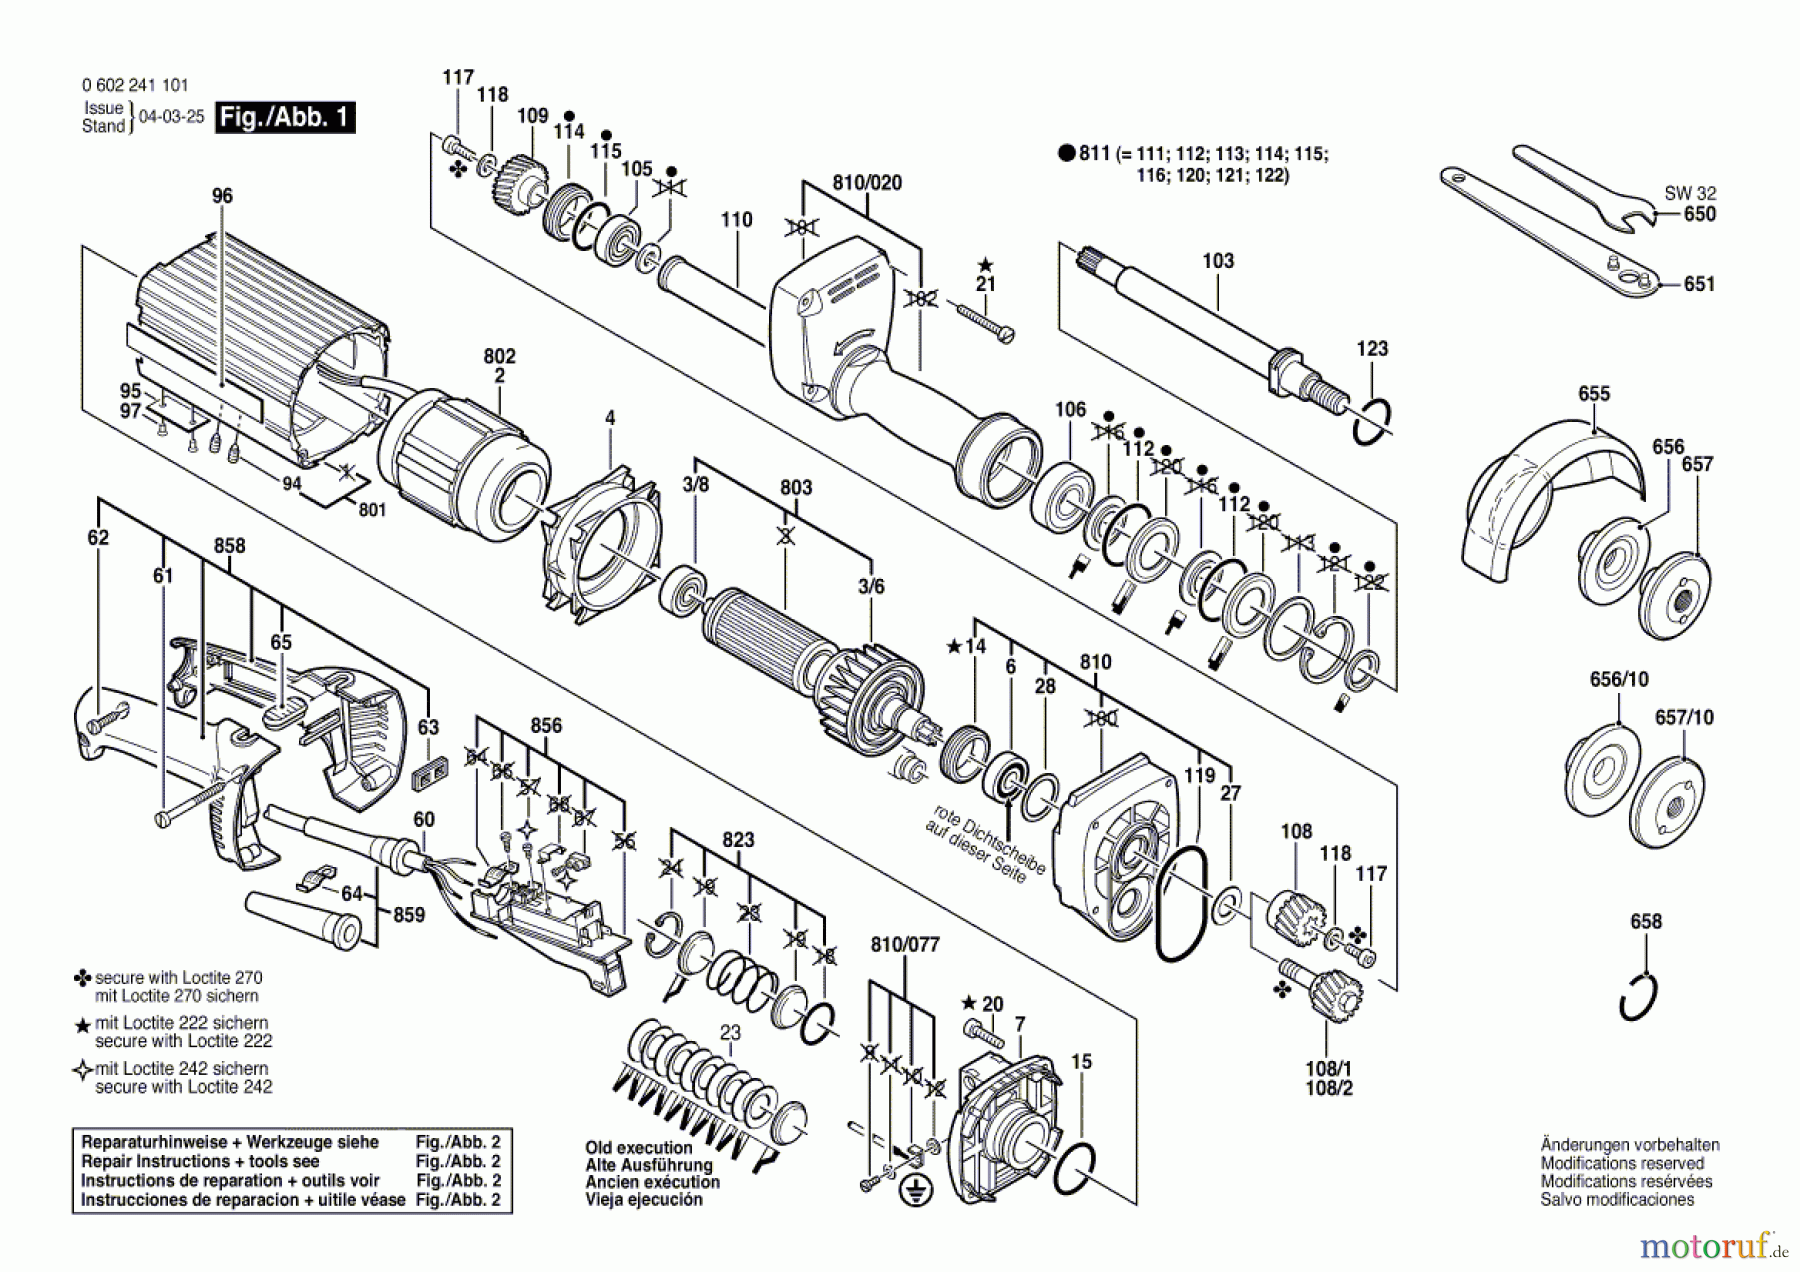  Bosch Werkzeug Hf-Geradschleifer 2 241 Seite 1